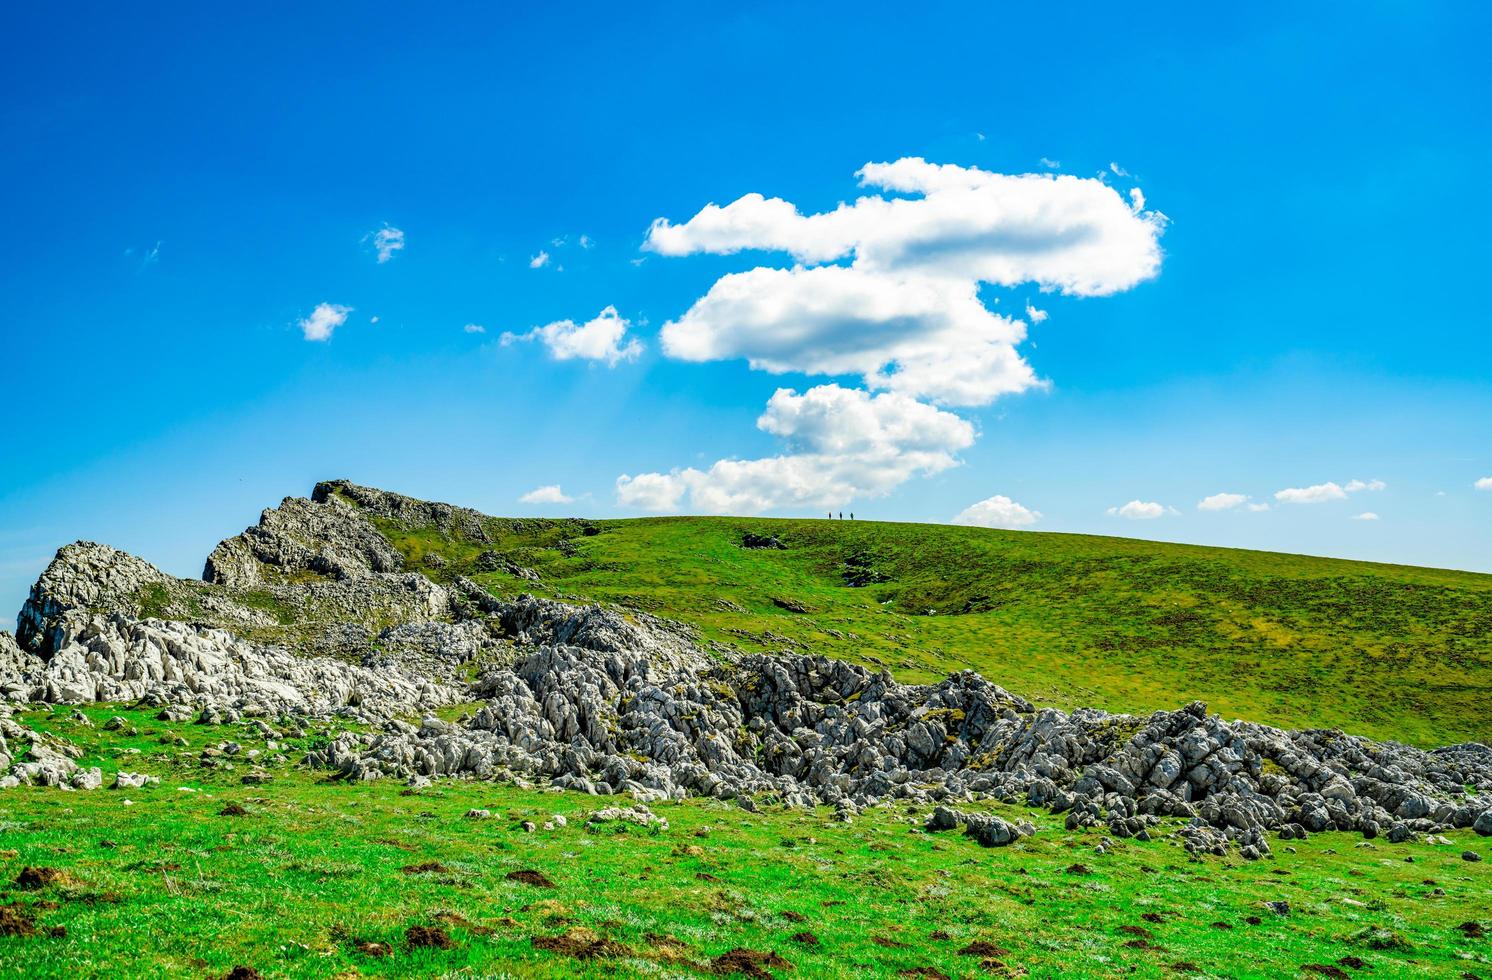 paisaje de hierba verde y colina rocosa en primavera con hermoso cielo azul y nubes blancas. campo o vista rural. fondo de naturaleza en un día soleado. ambiente de aire fresco. piedra en la montaña. foto